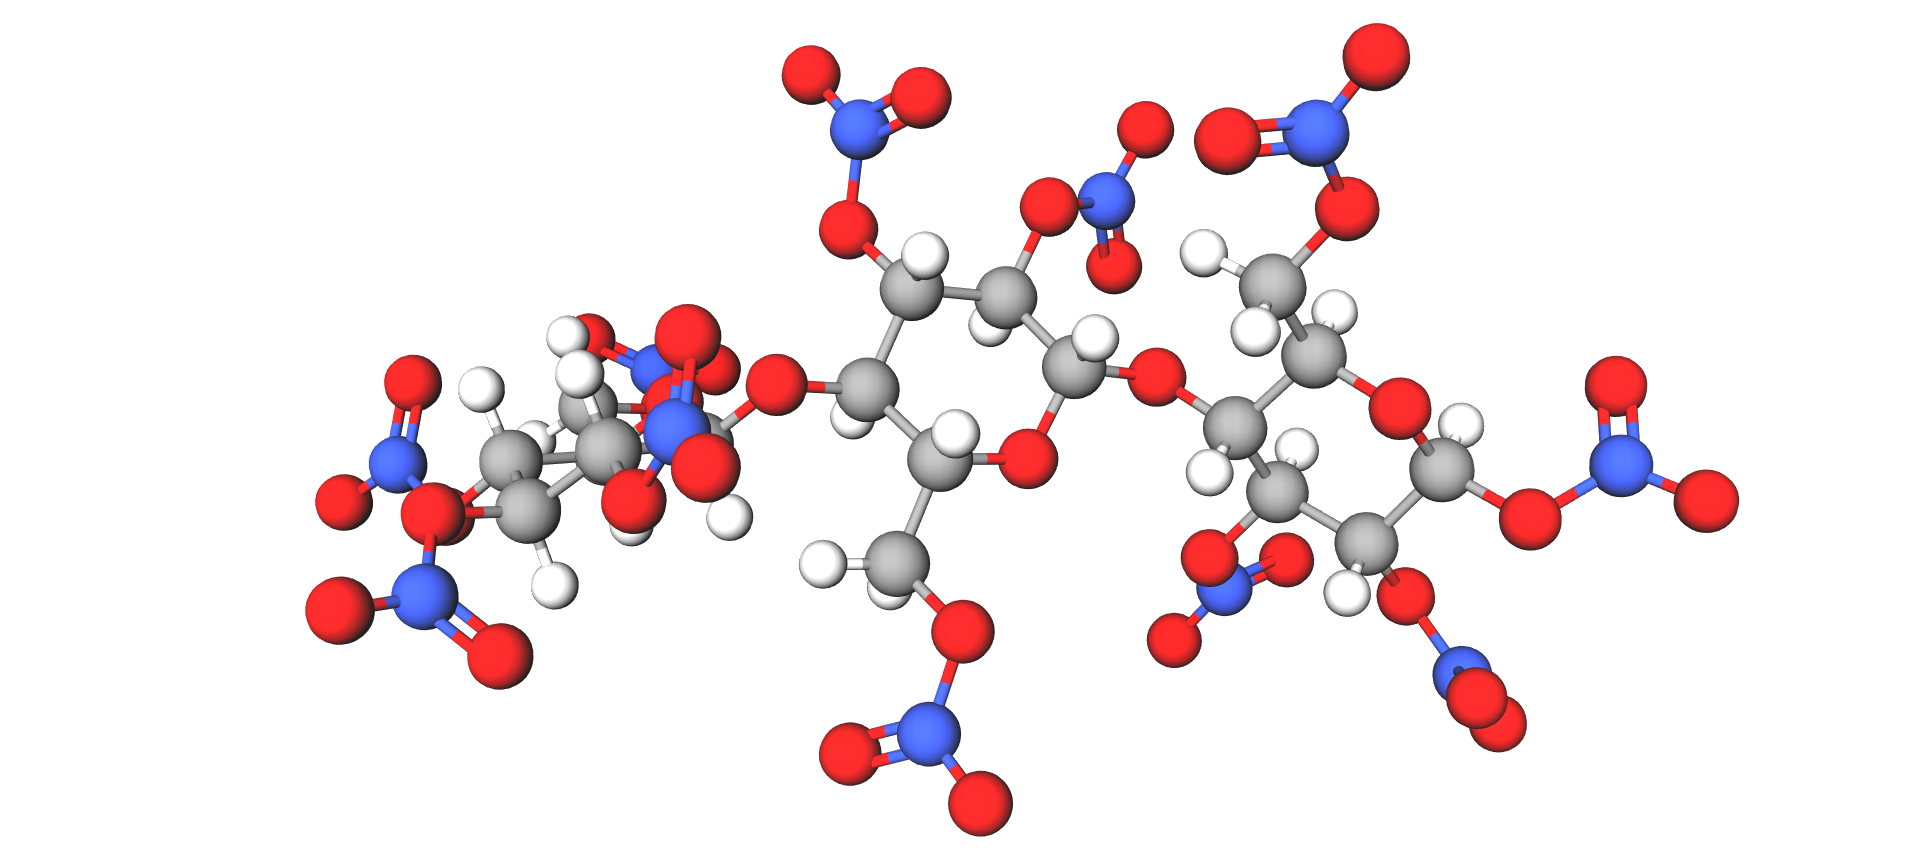 Prikazan je model trinitroceluloze od kuglica i štapića, razgranata struktura koju čine atomi vodika, kisika, ugljika i dušika.